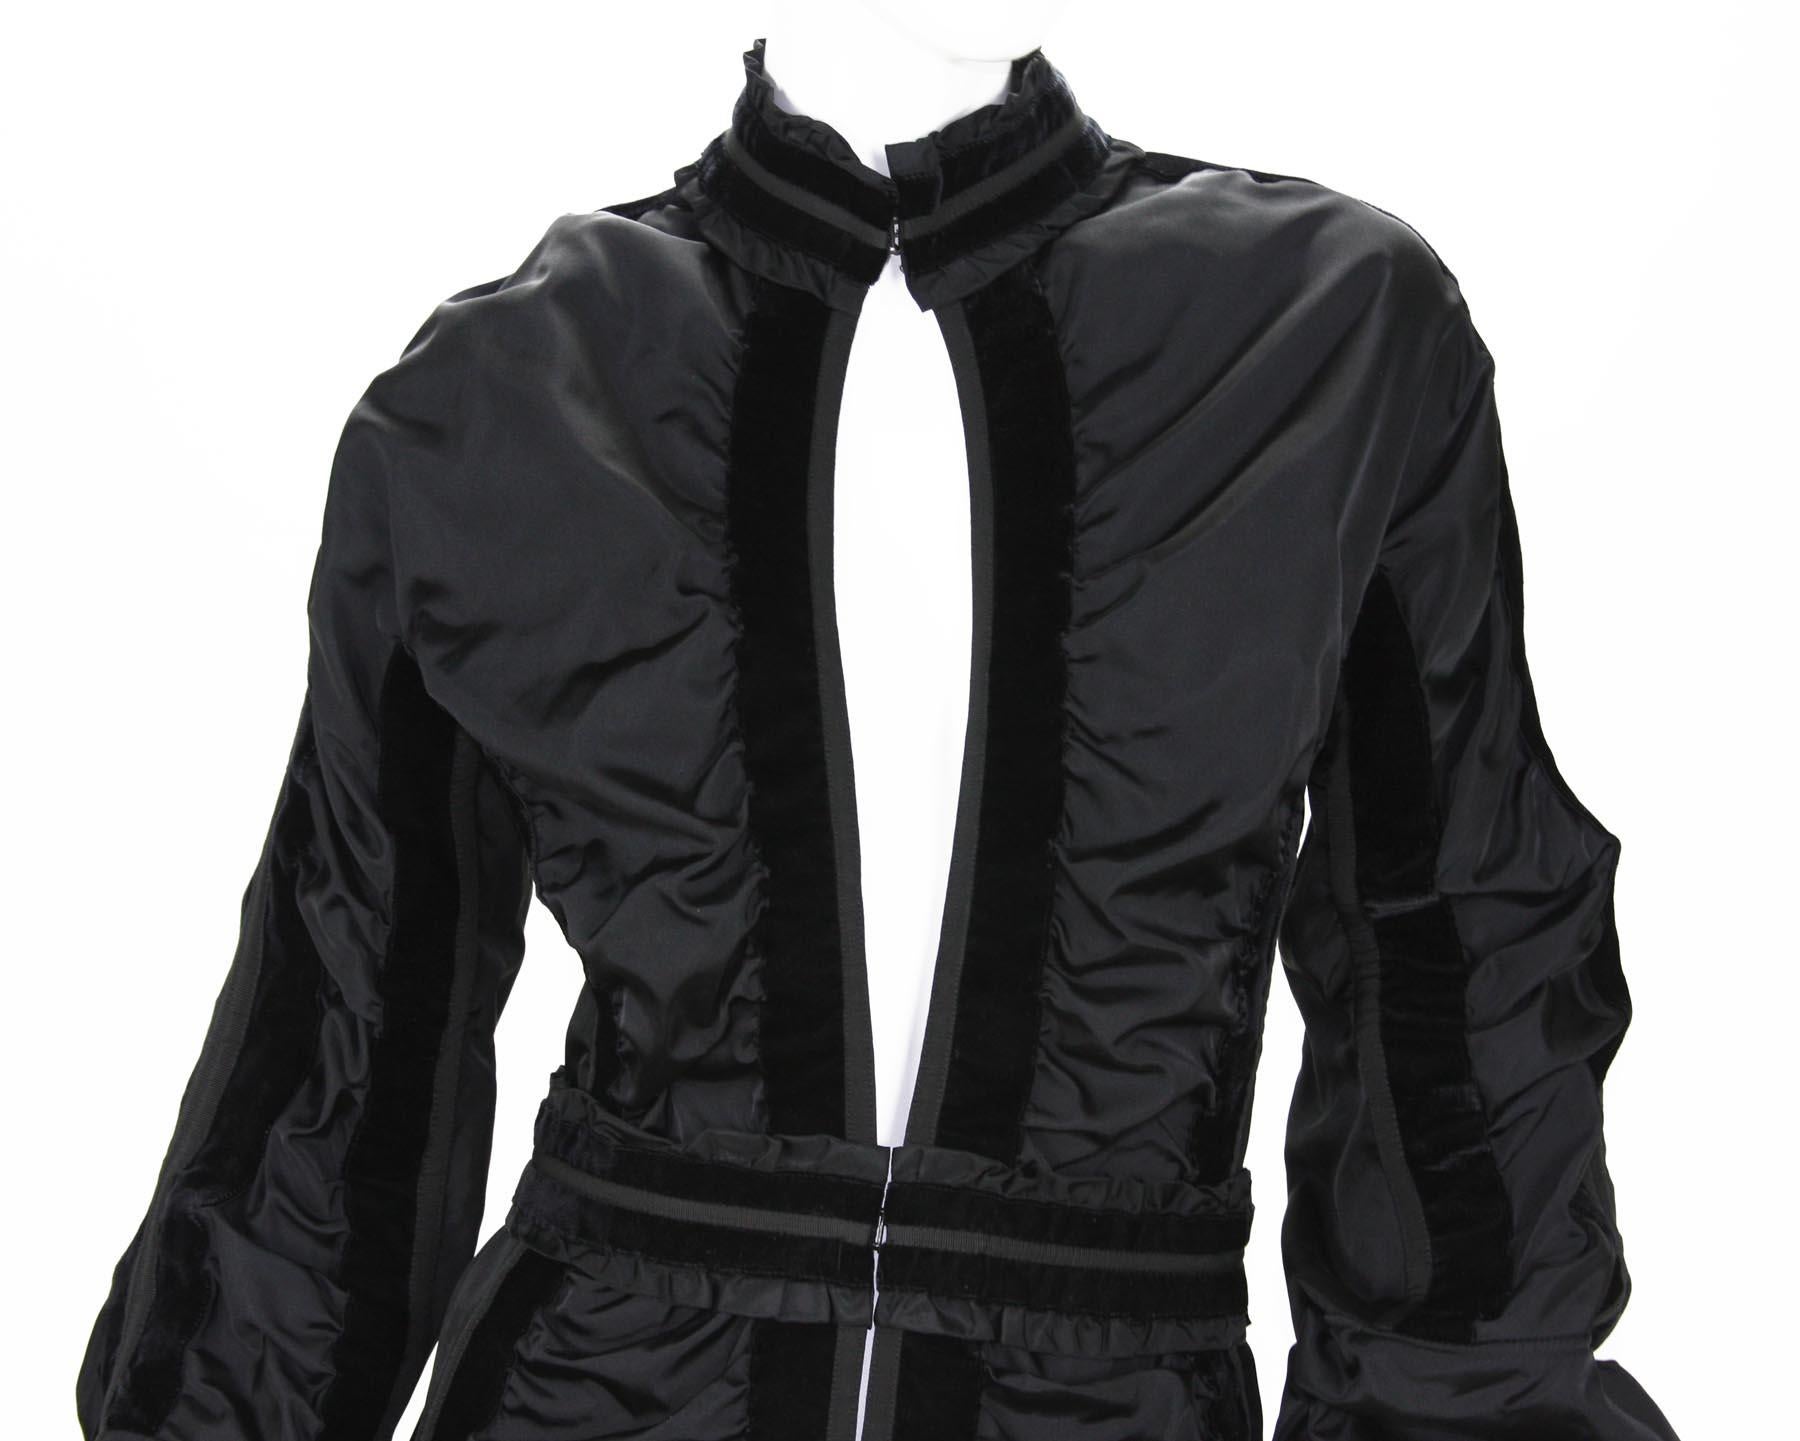 Tom Ford for Yves Saint Laurent FW 2002 Collection Black Taffeta Velvet Jacket 6 For Sale 4